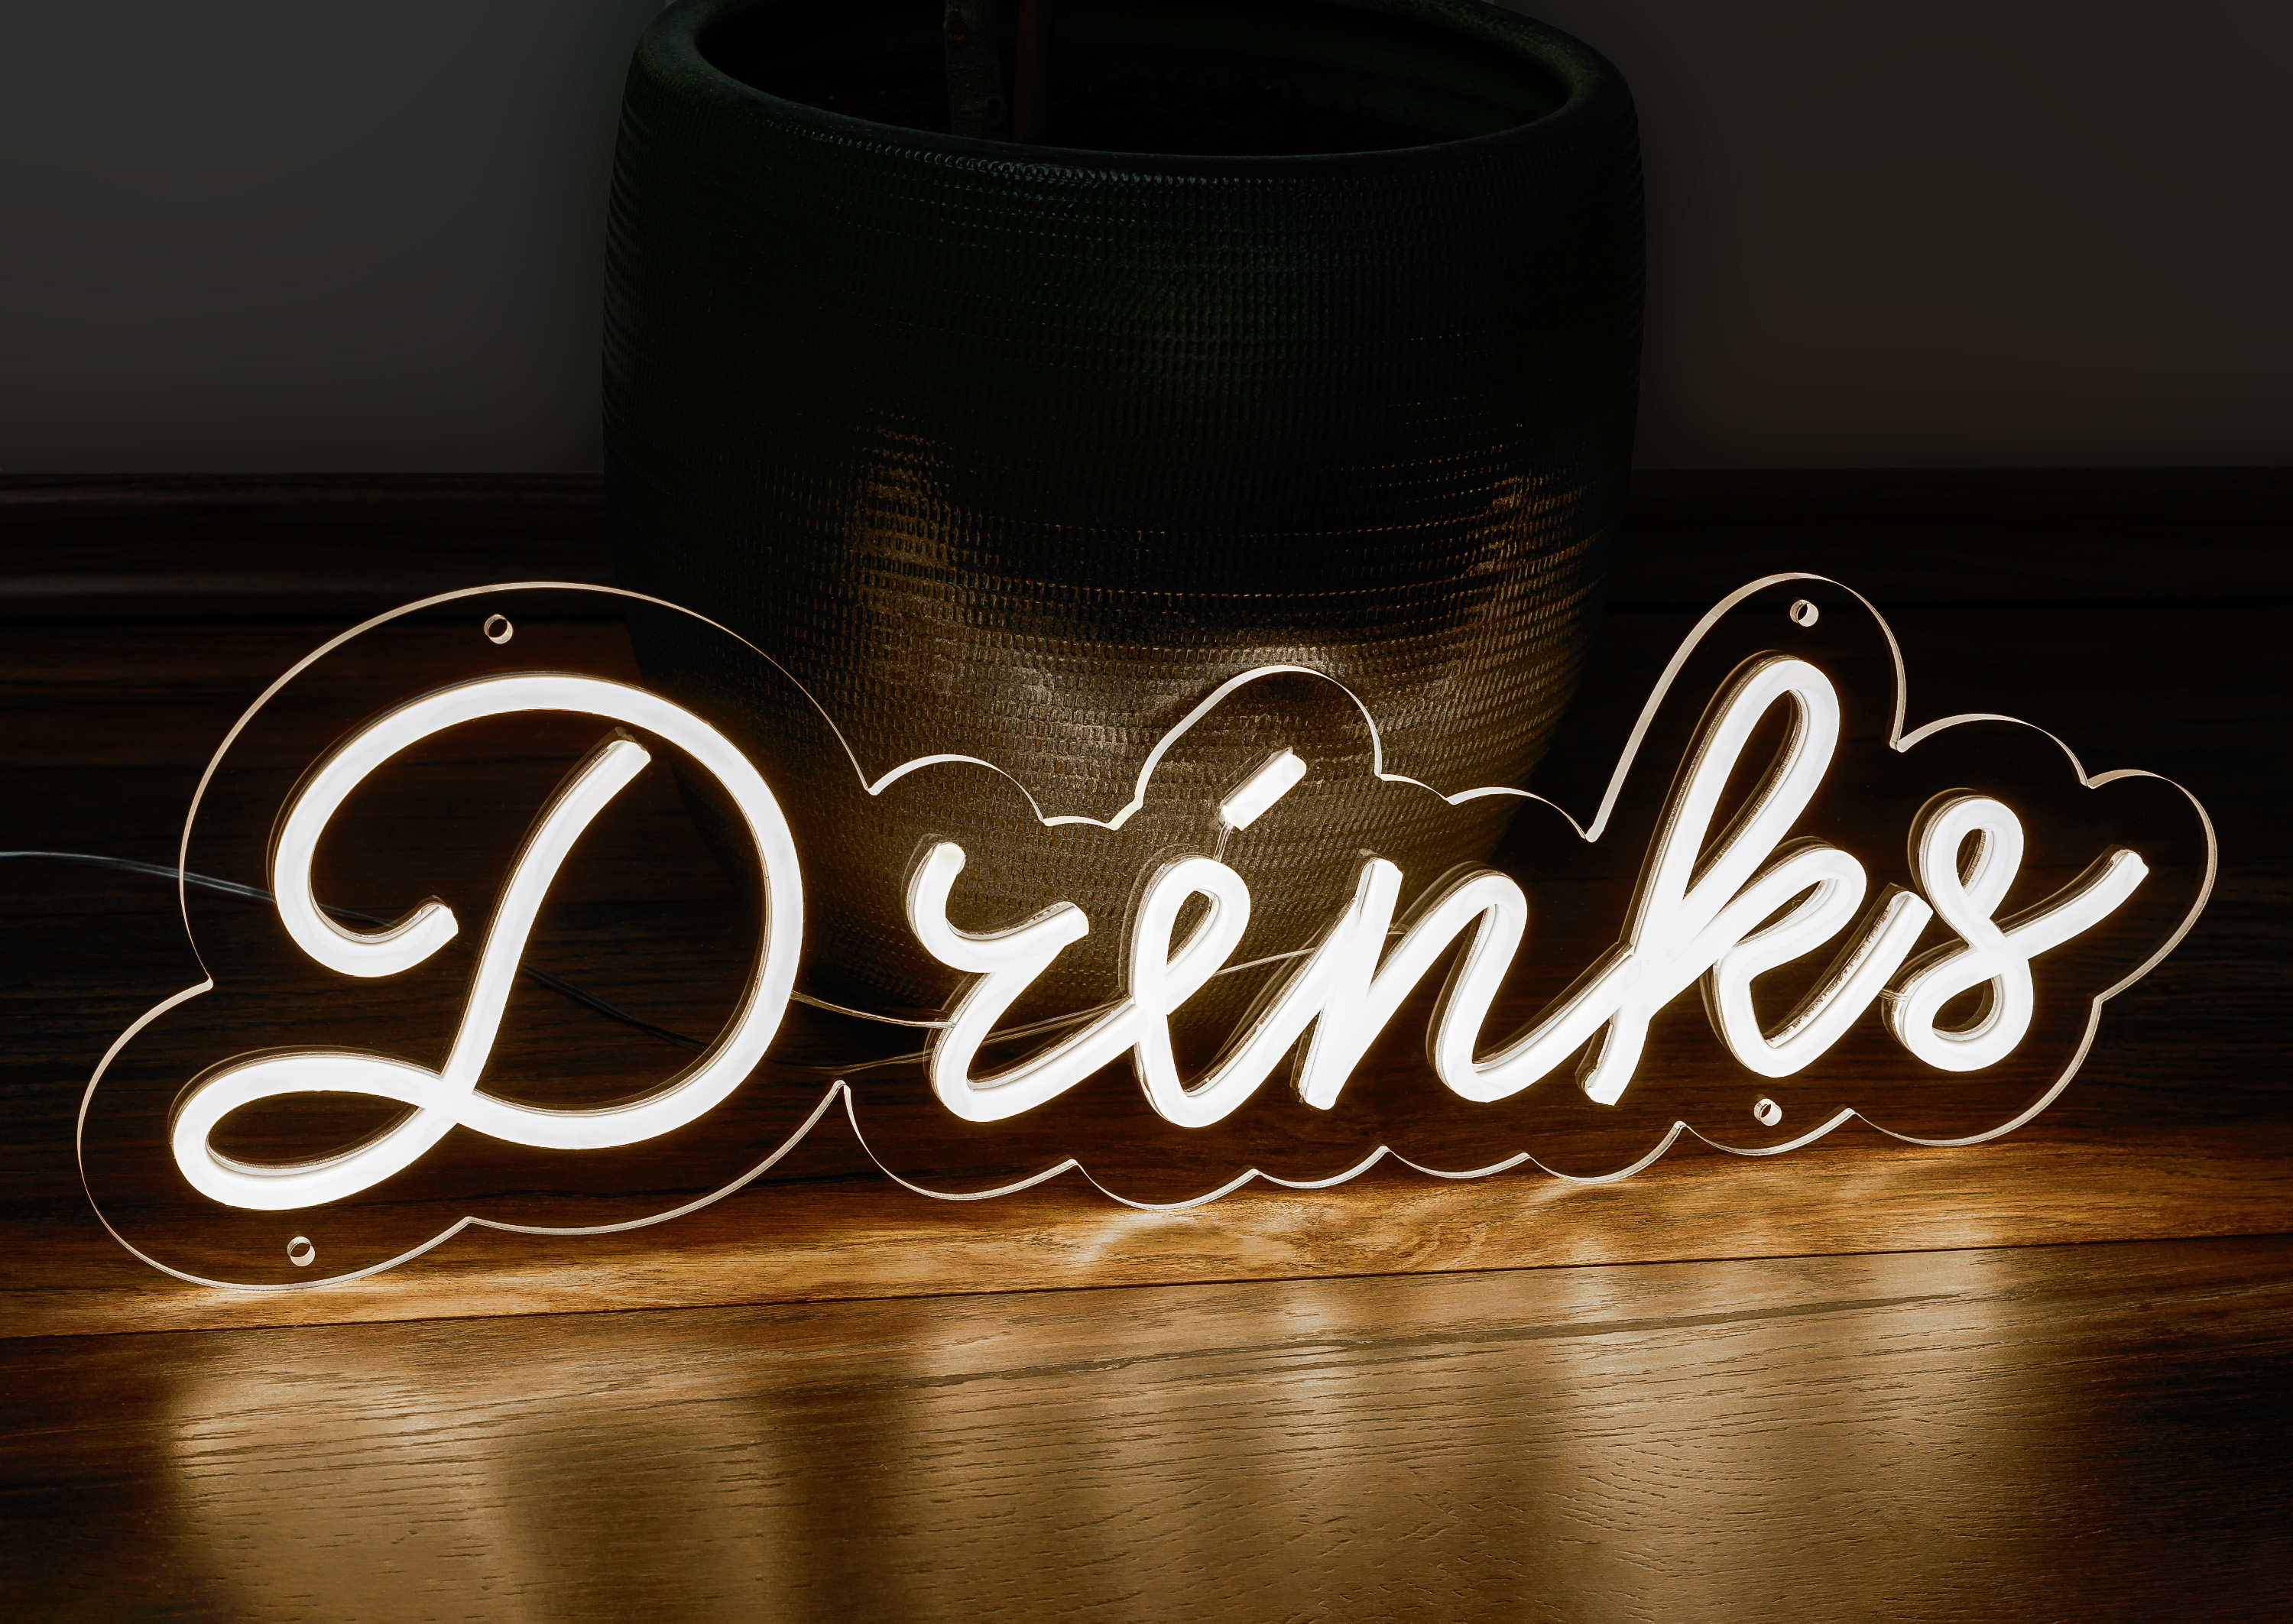 LED-Leuchtschild "Drinks"